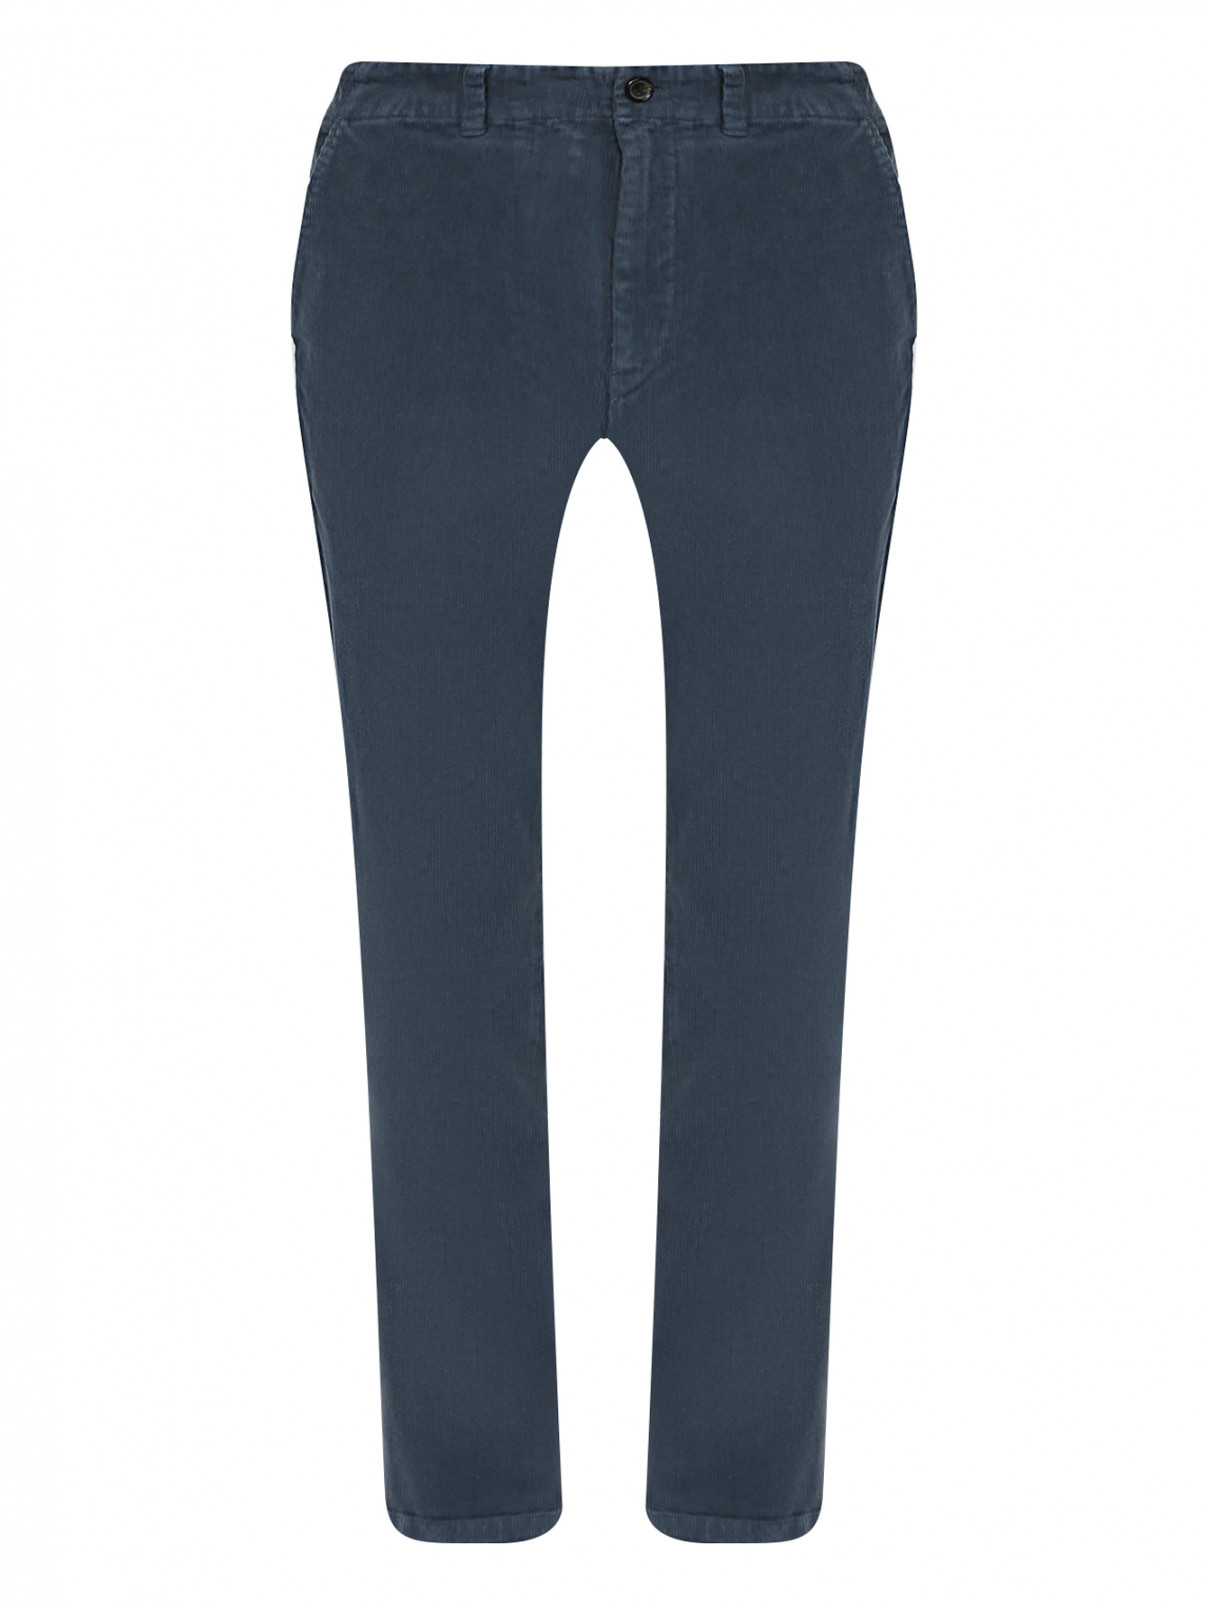 Вельветовые брюки с карманами Paul Smith  –  Общий вид  – Цвет:  Синий